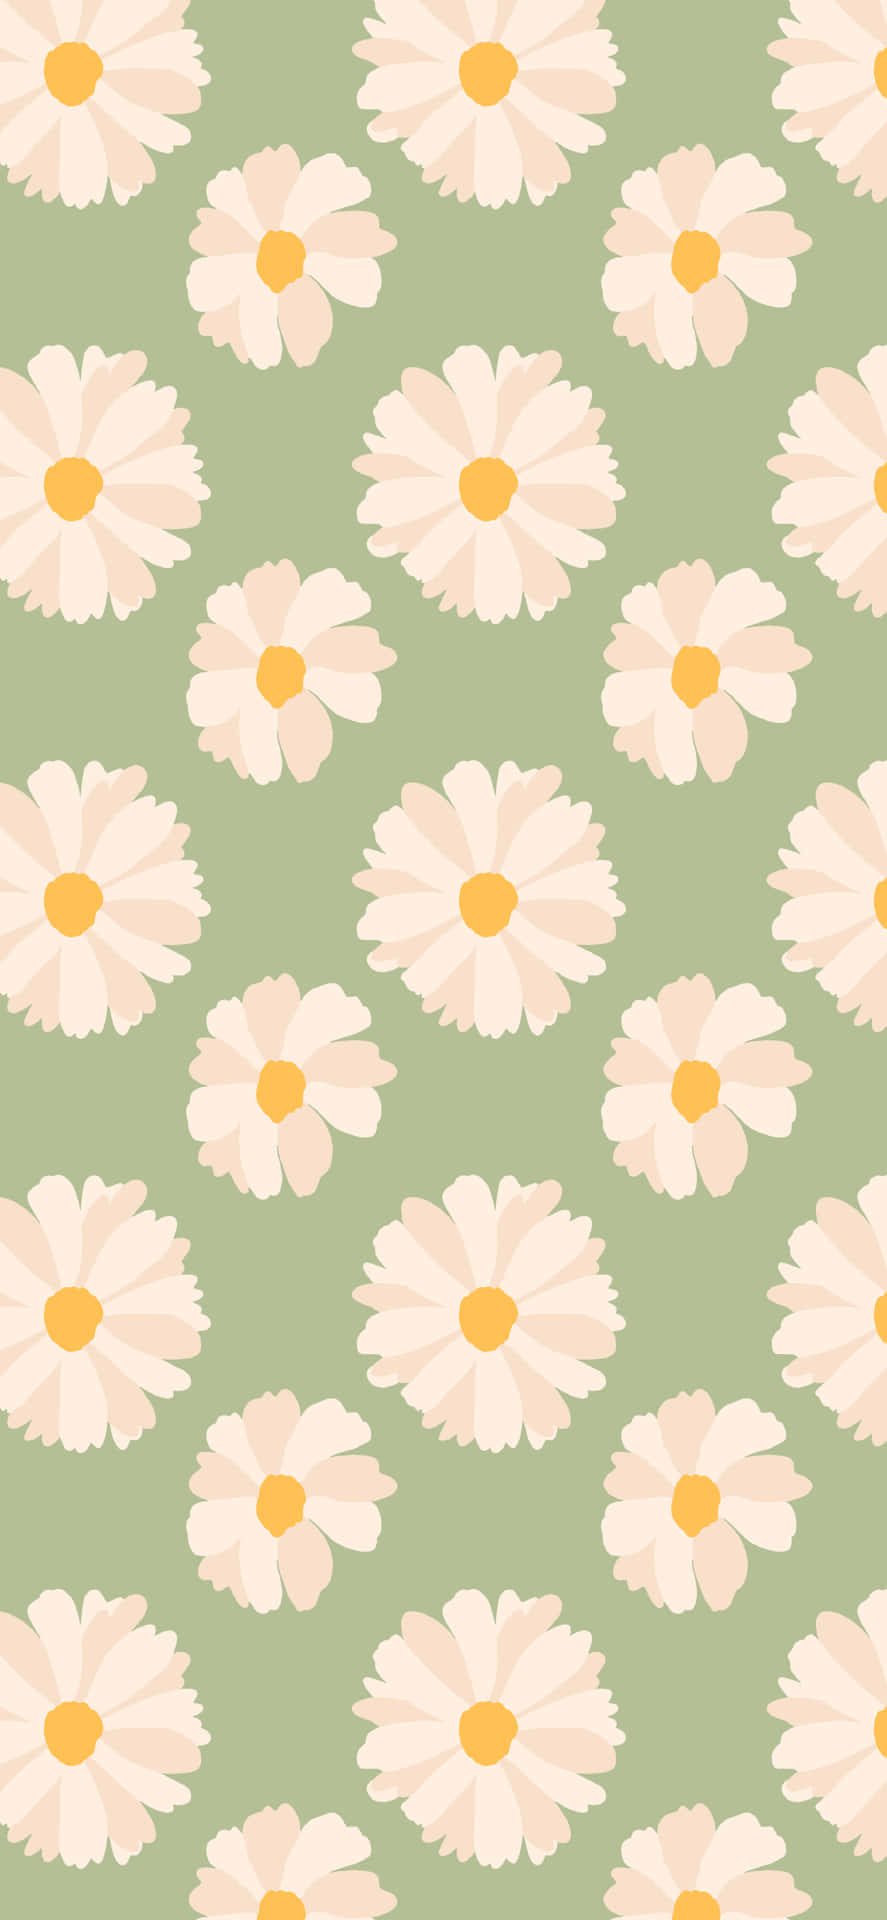 38 Cute Spring Wallpapers  WallpaperSafari